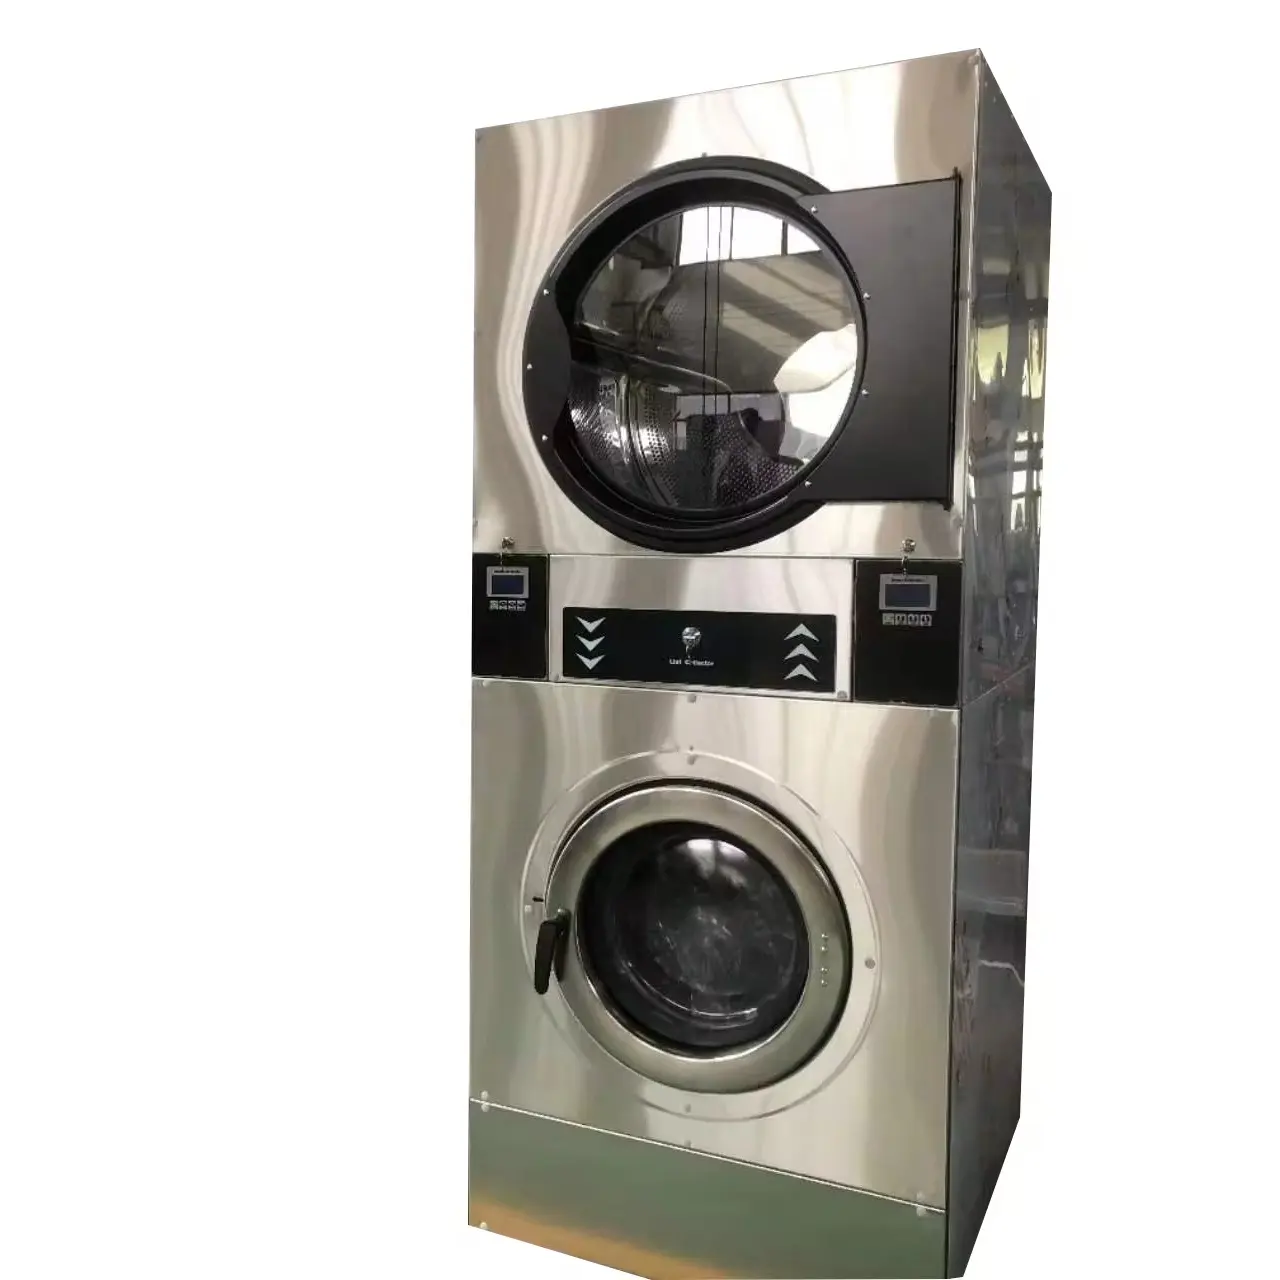 Equipo de lavandería de monedas comercial de 12kg a 22kg Lavadora y secadora de ropa expendedora Lavadora y secadora apiladas